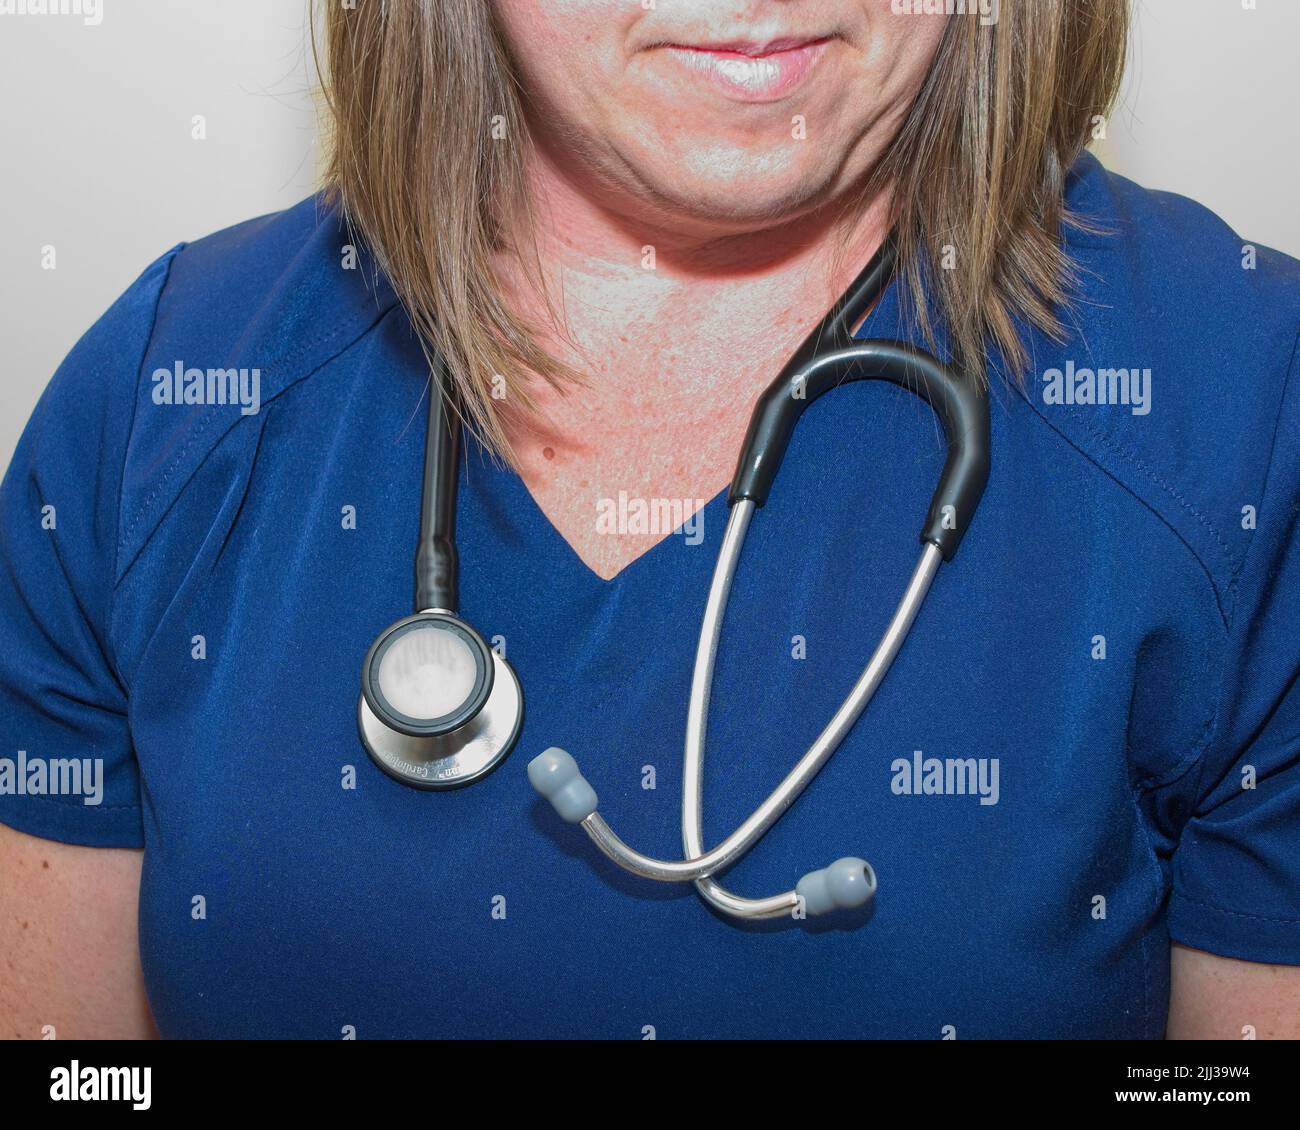 Teilkörperaufnahme einer Krankenschwester, die Stethoskop um den Hals trägt Stockfoto